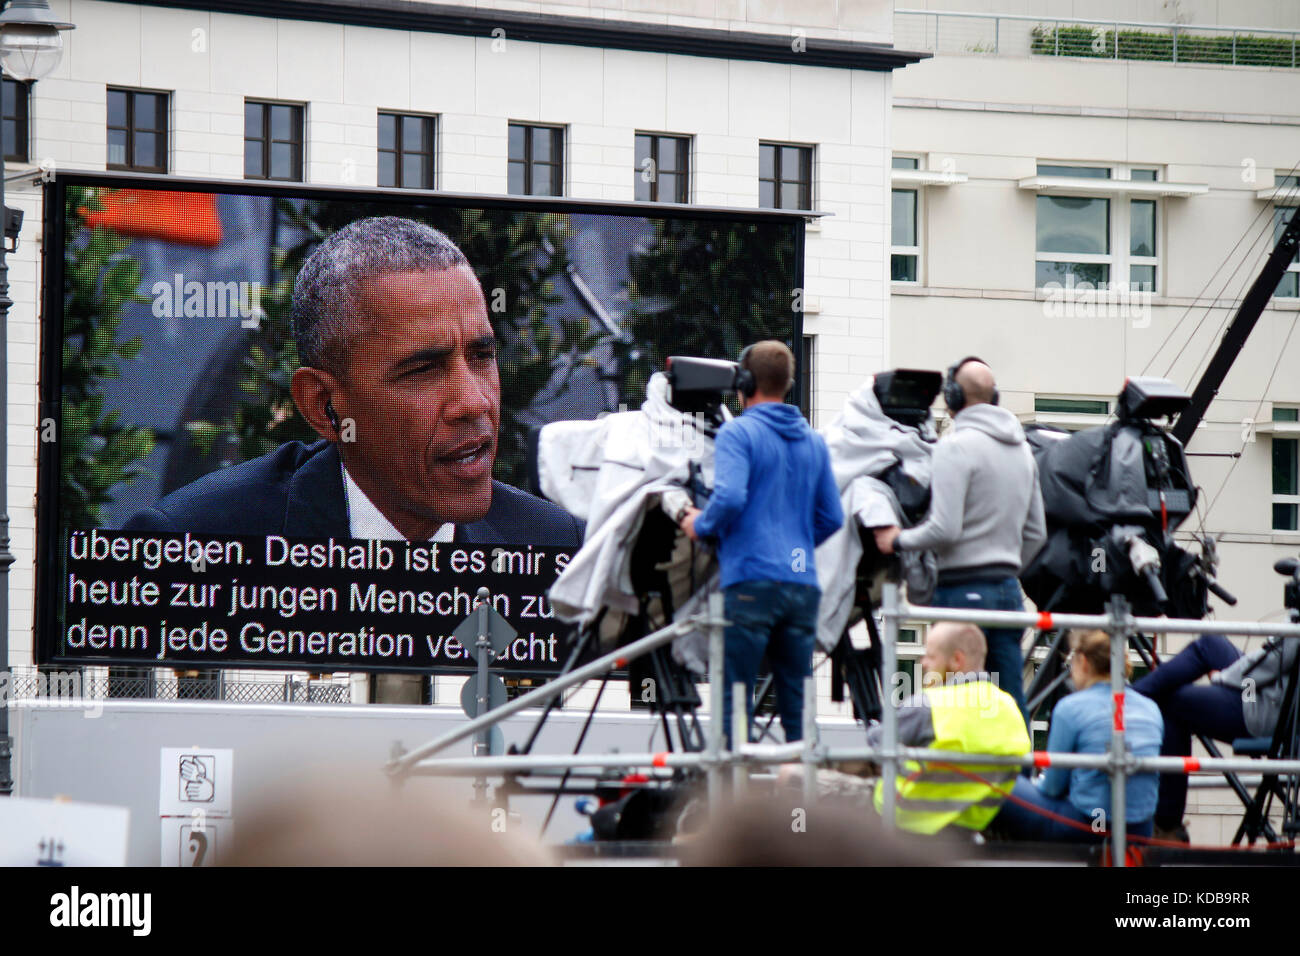 Impressionen: Barack Obama - evangelischer kirchentag, platz des 13. Maerz, 25. mai 2017, berlín. Foto de stock